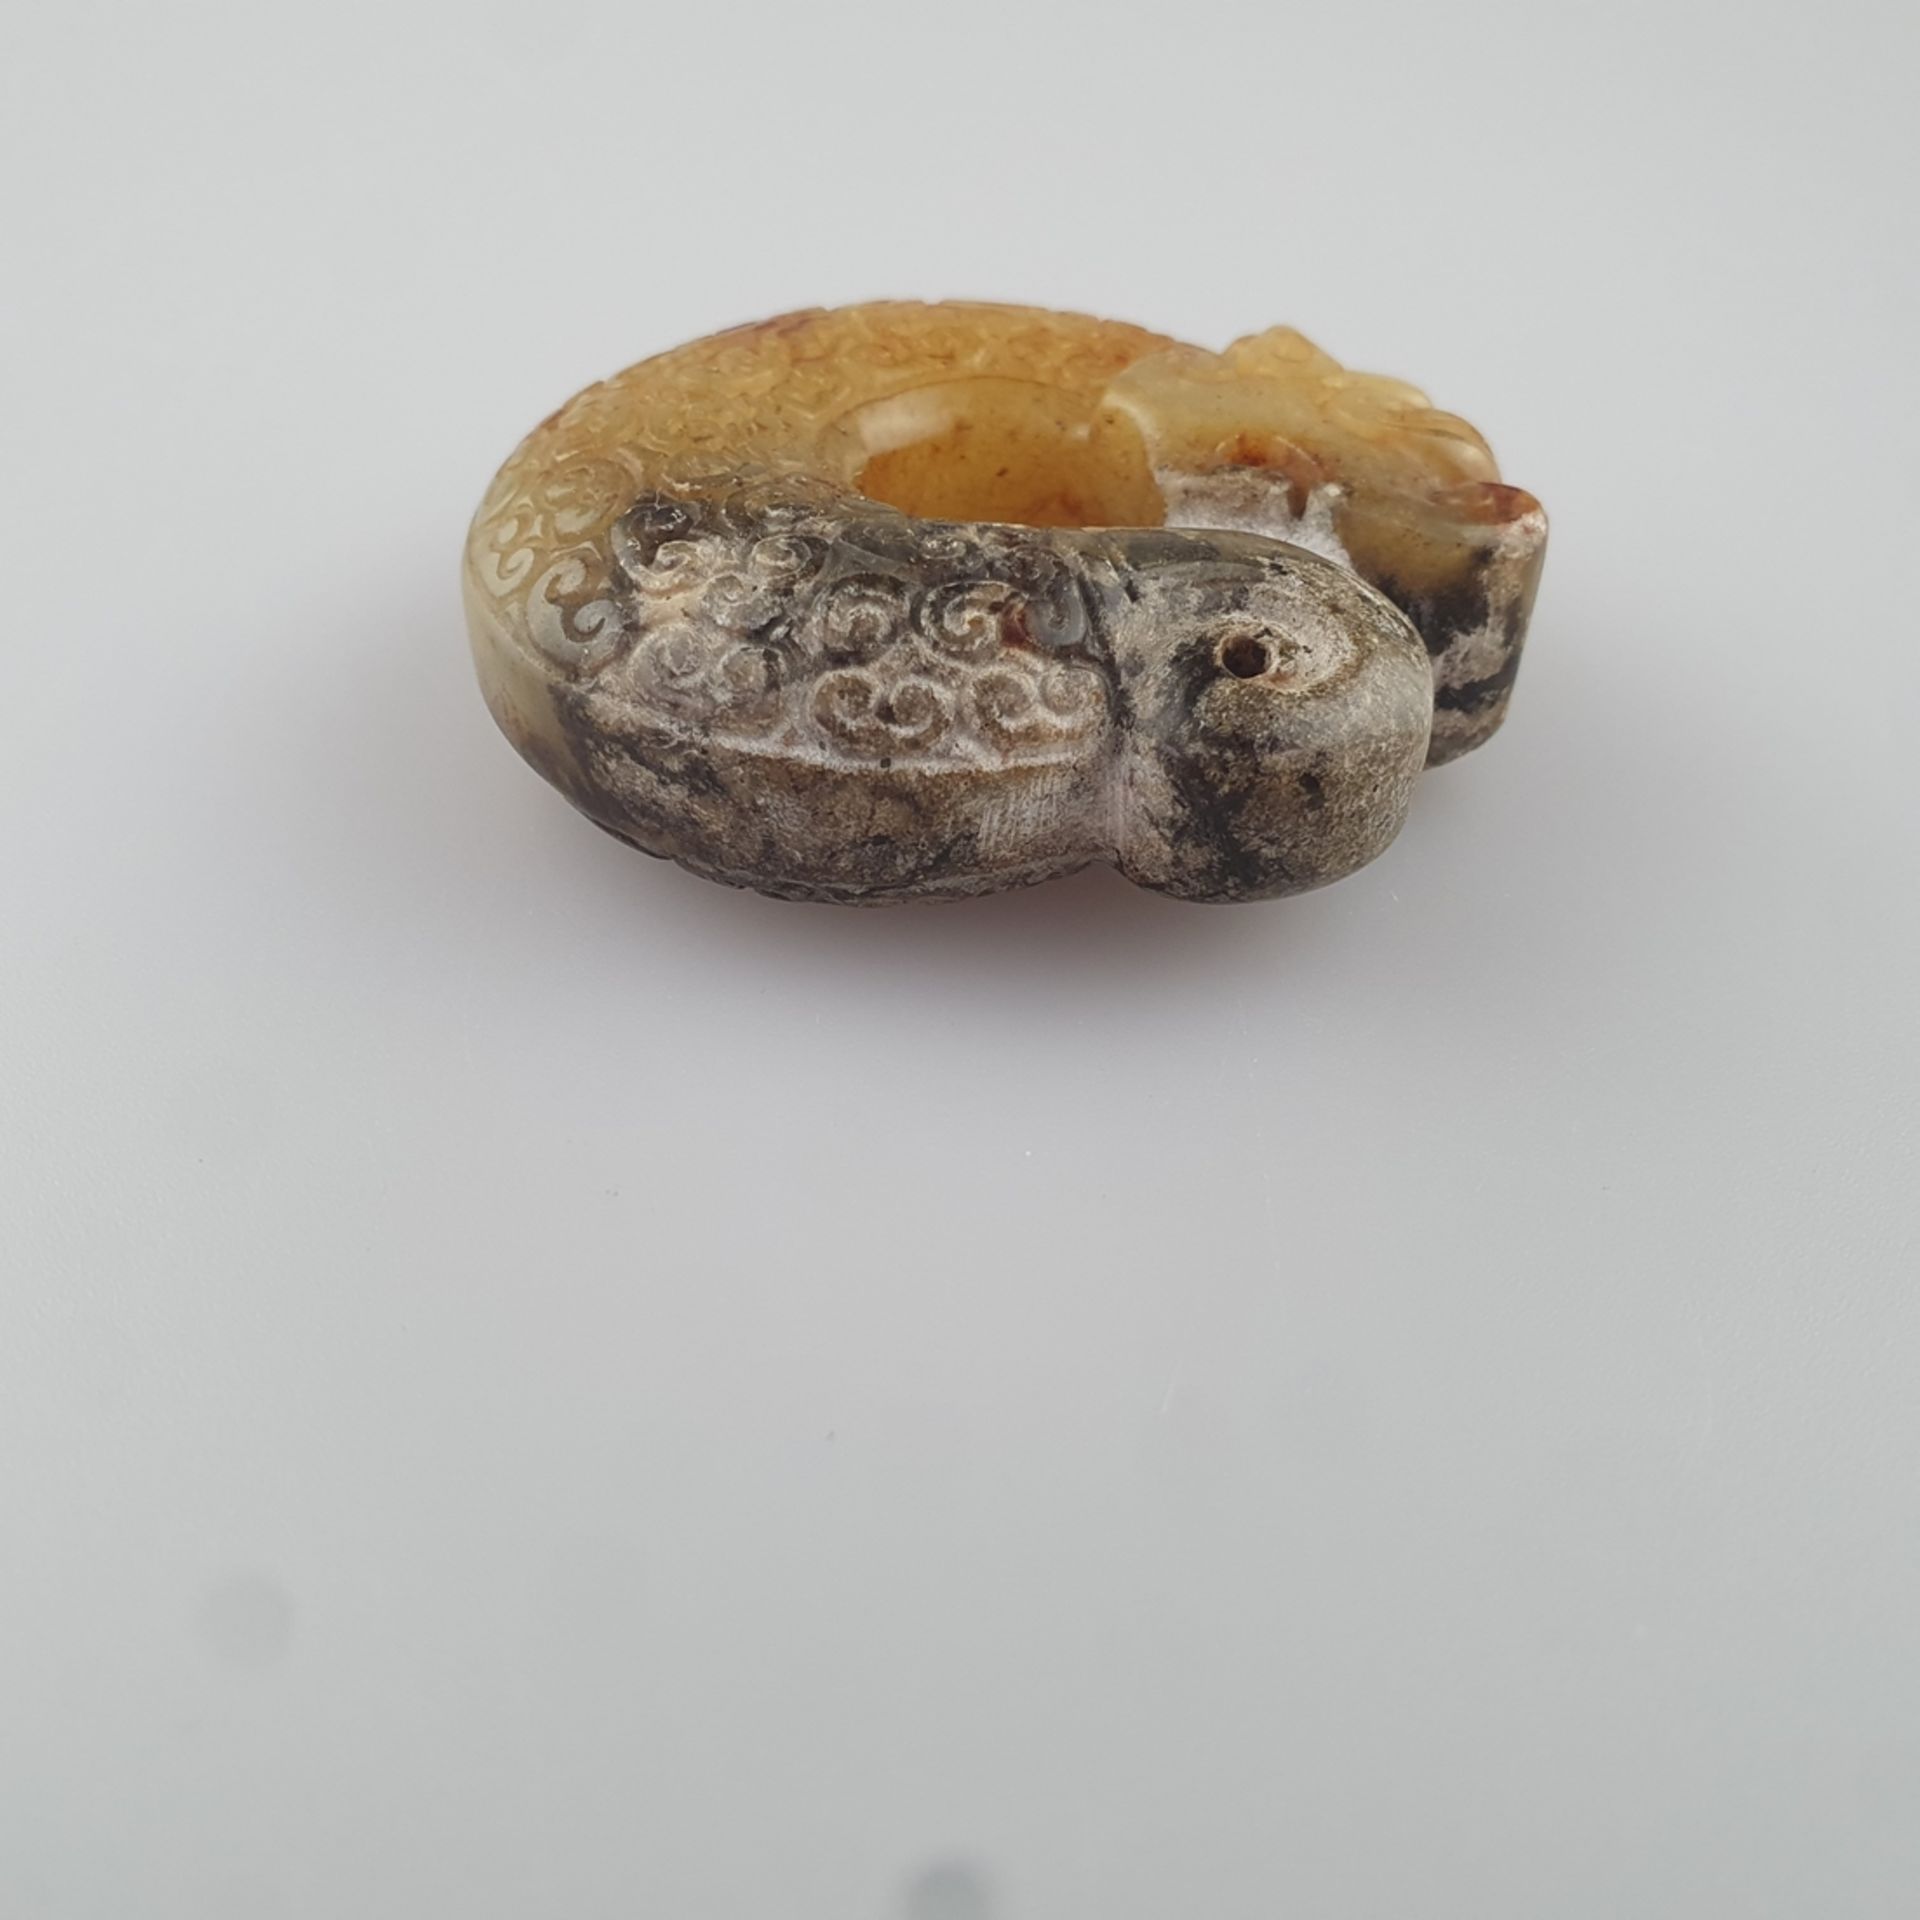 Zhulong ("Schweinsdrache") - China, braun-gelbe Jade, teils kalzifiziert, im Stil der neolithischen - Bild 2 aus 6